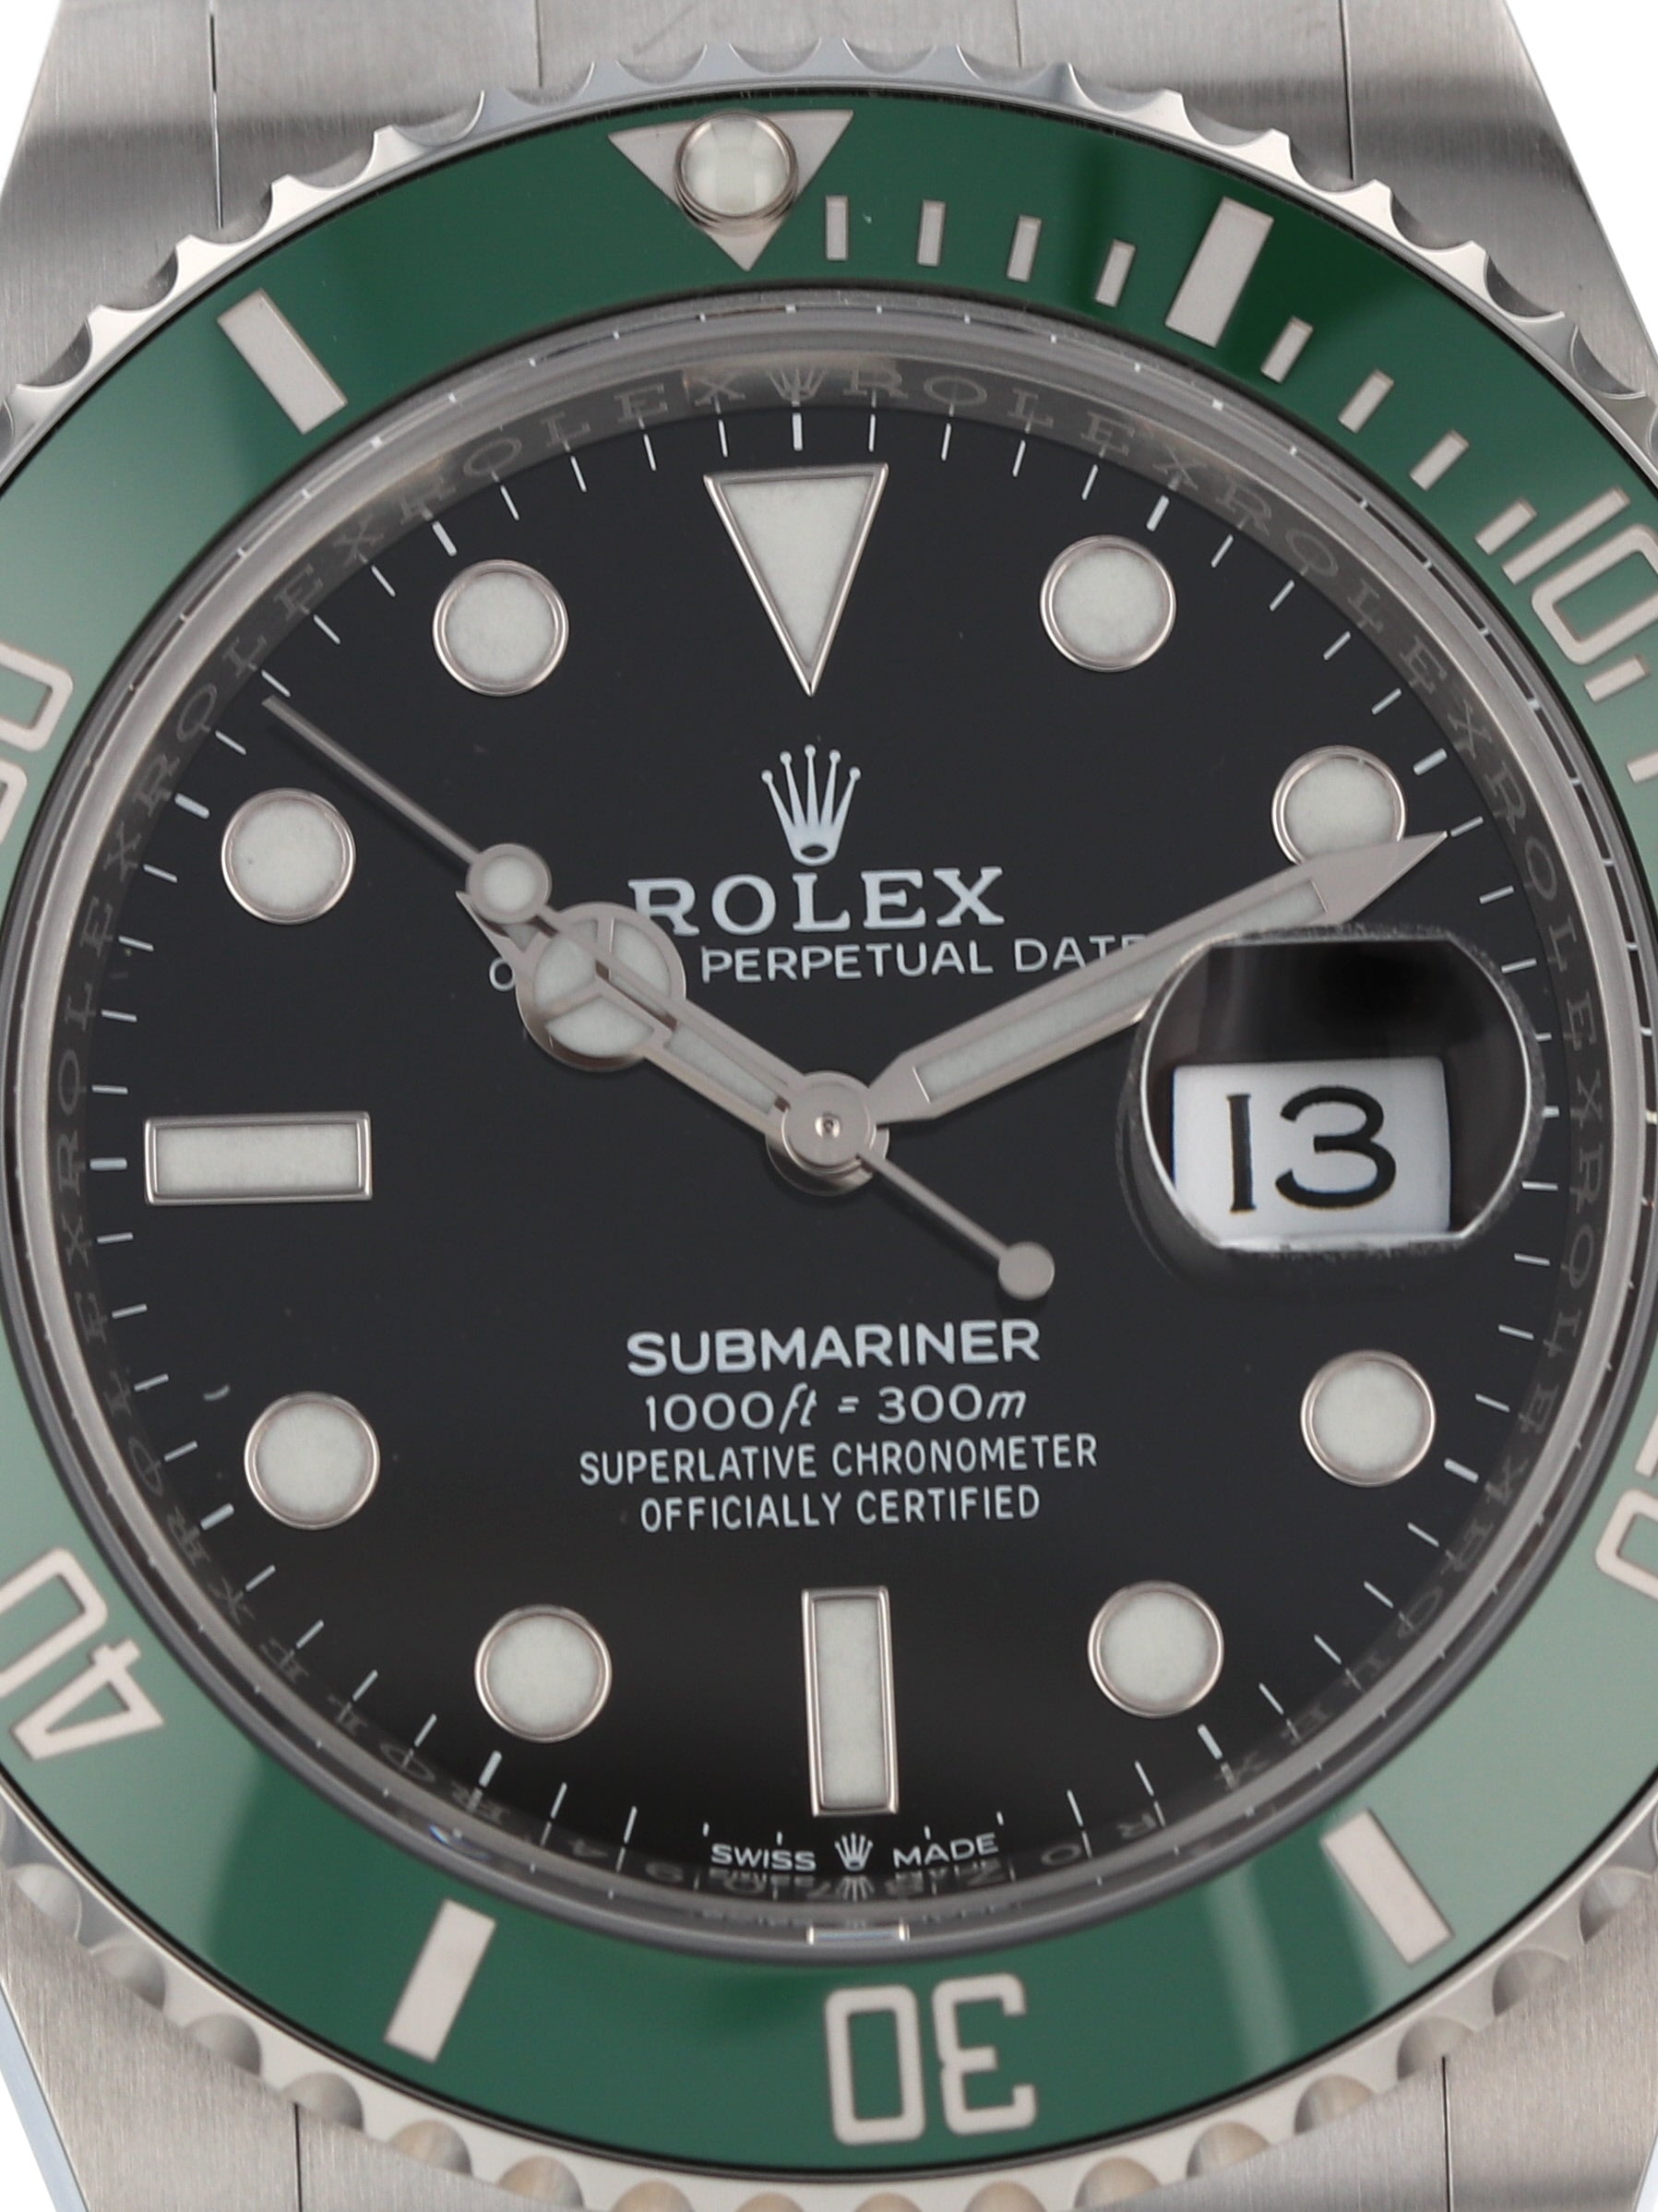 Rolex Submariner Green Kermit 41 Steel Mens Watch 126610LV Unworn